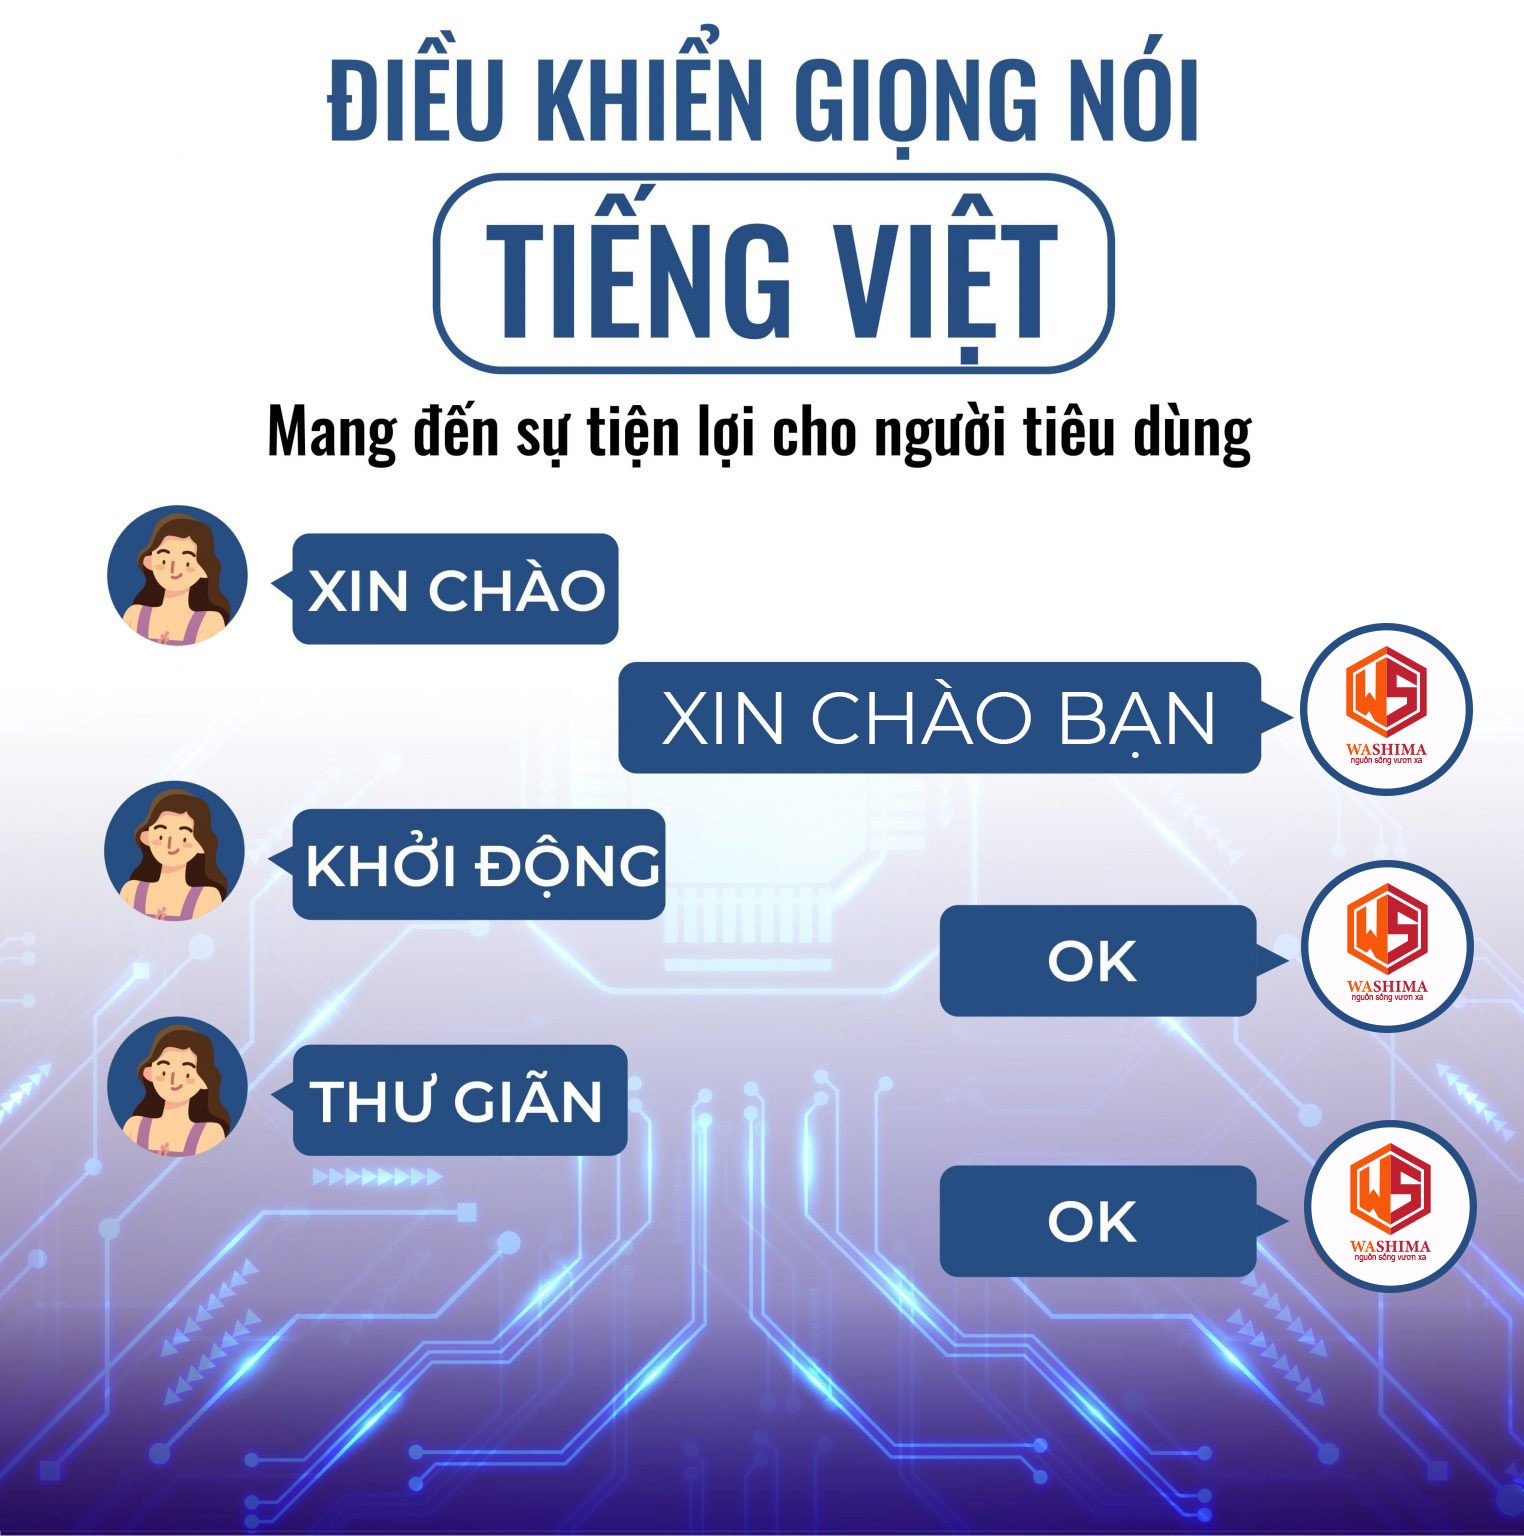 chế độ điều khiển bằng giọng nói Tiếng Việt